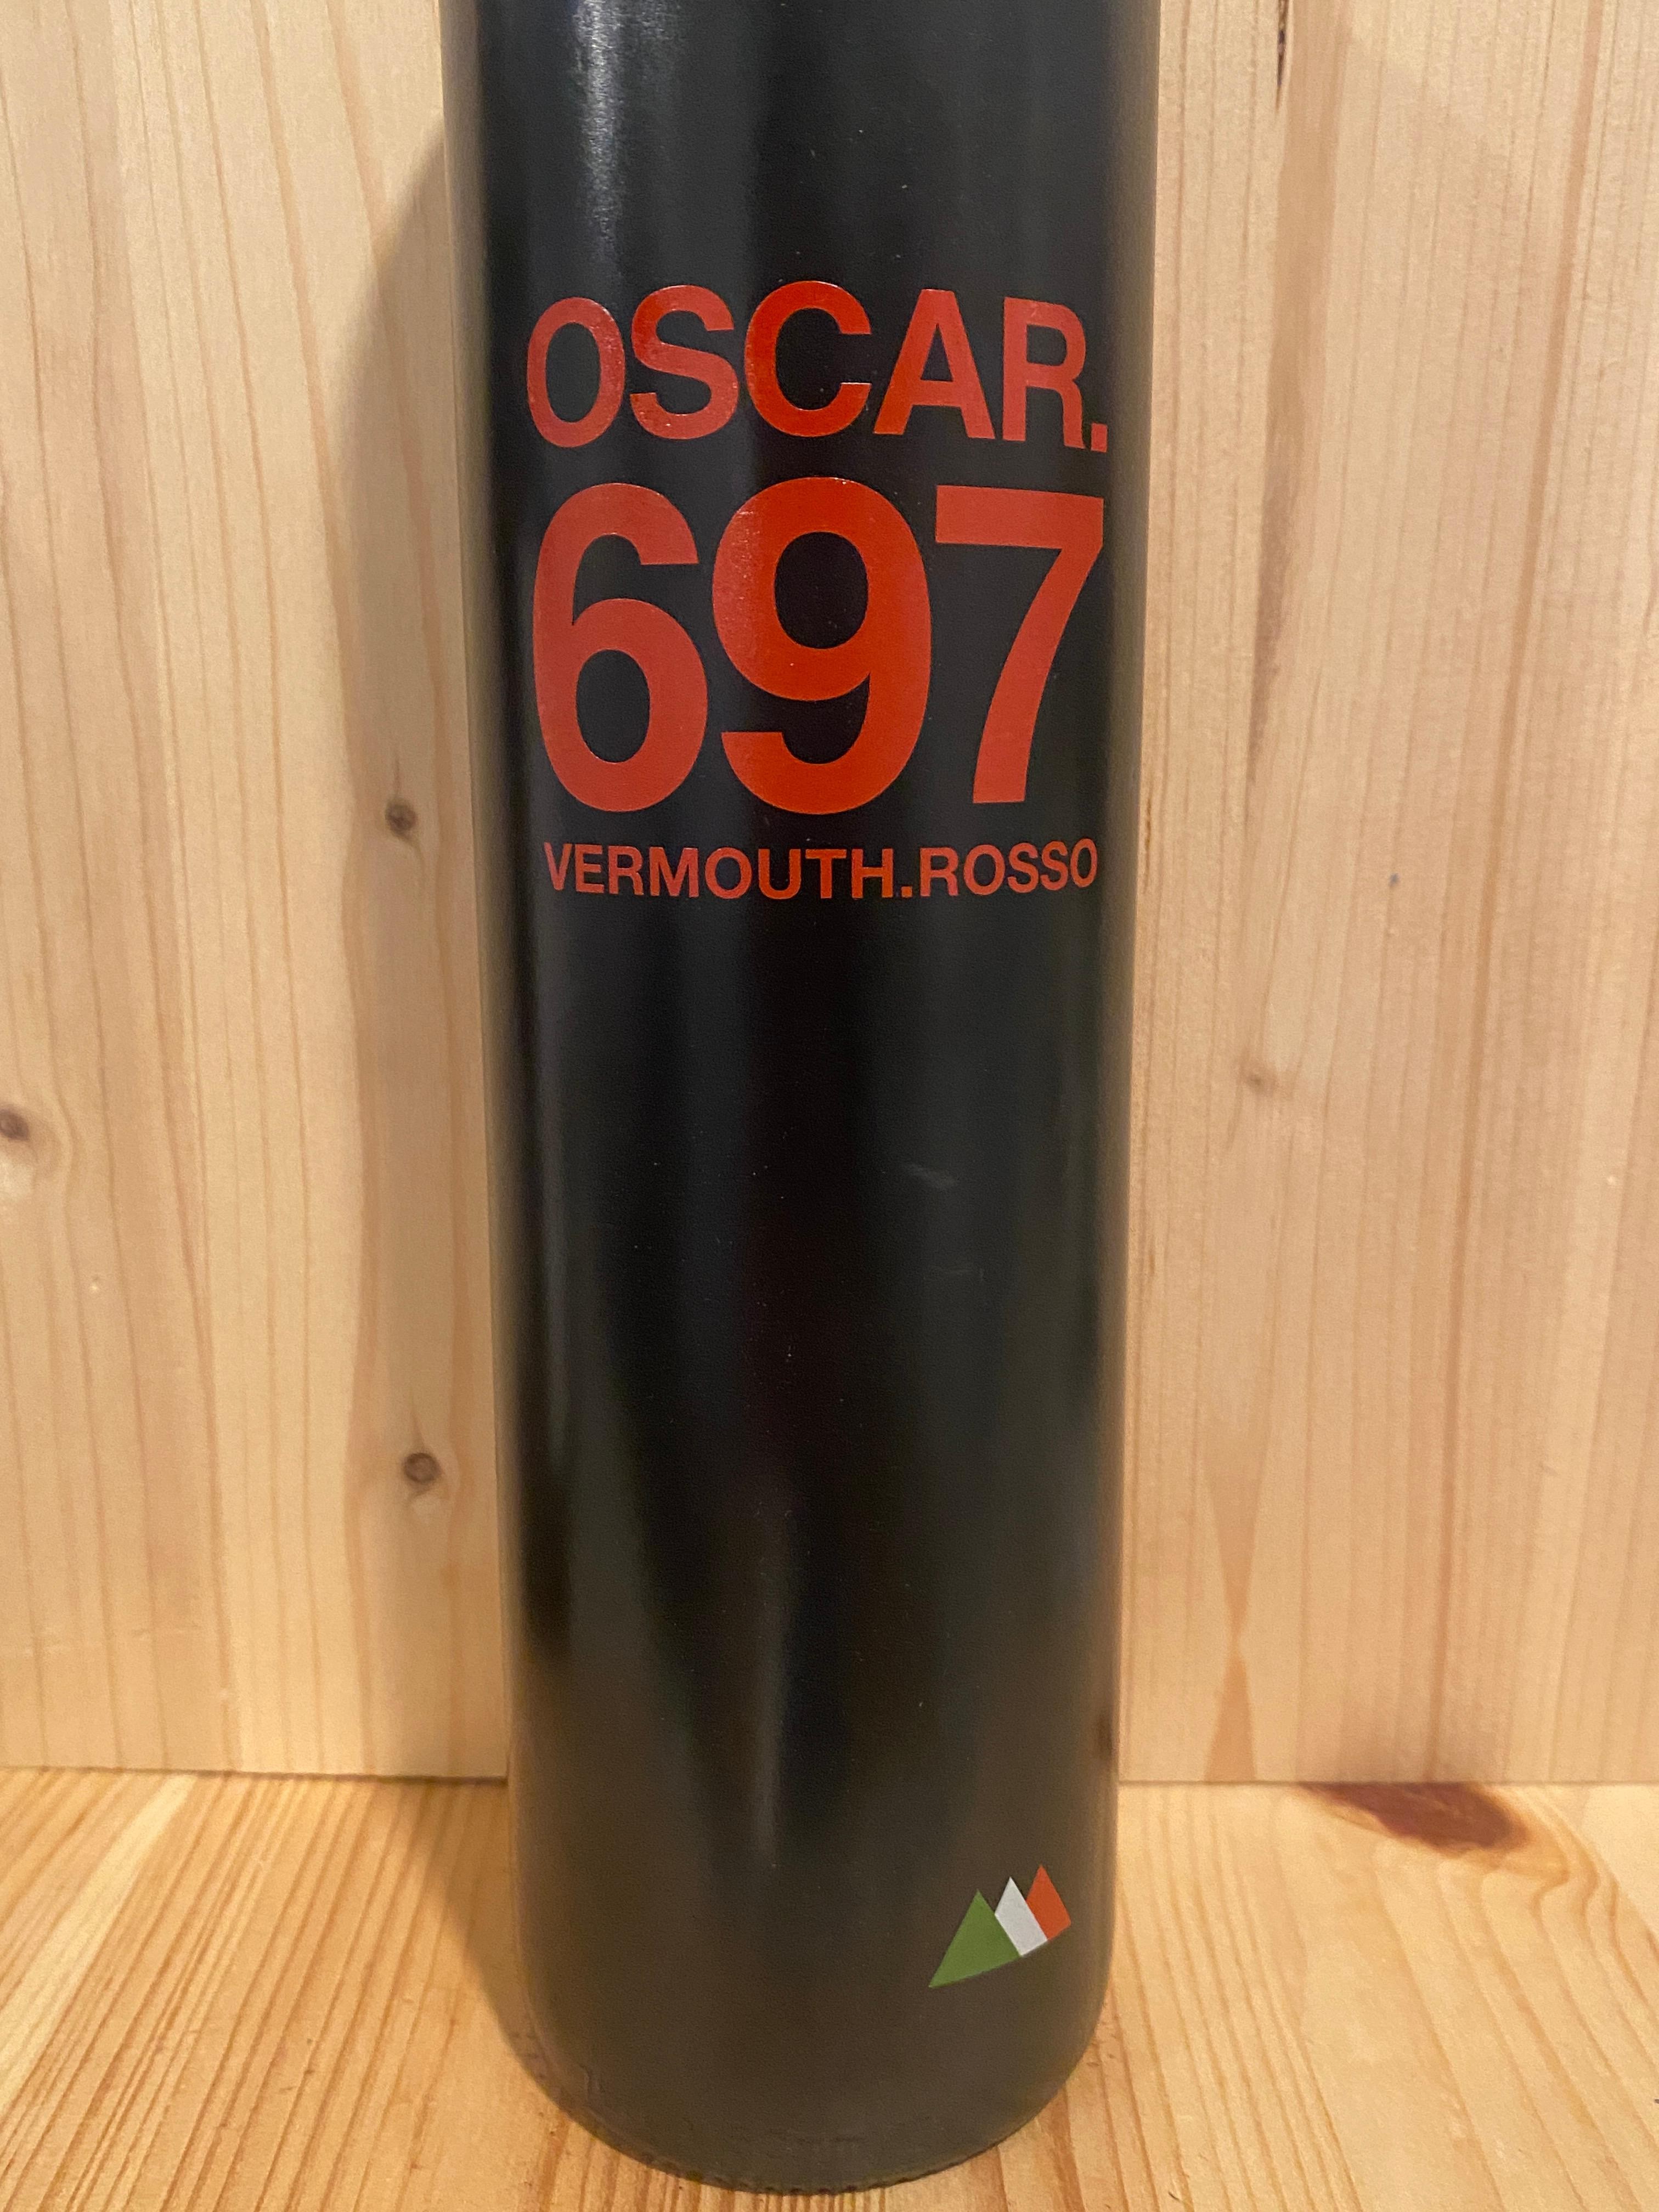 Oscar.697 Vermouth Rosso: Italy